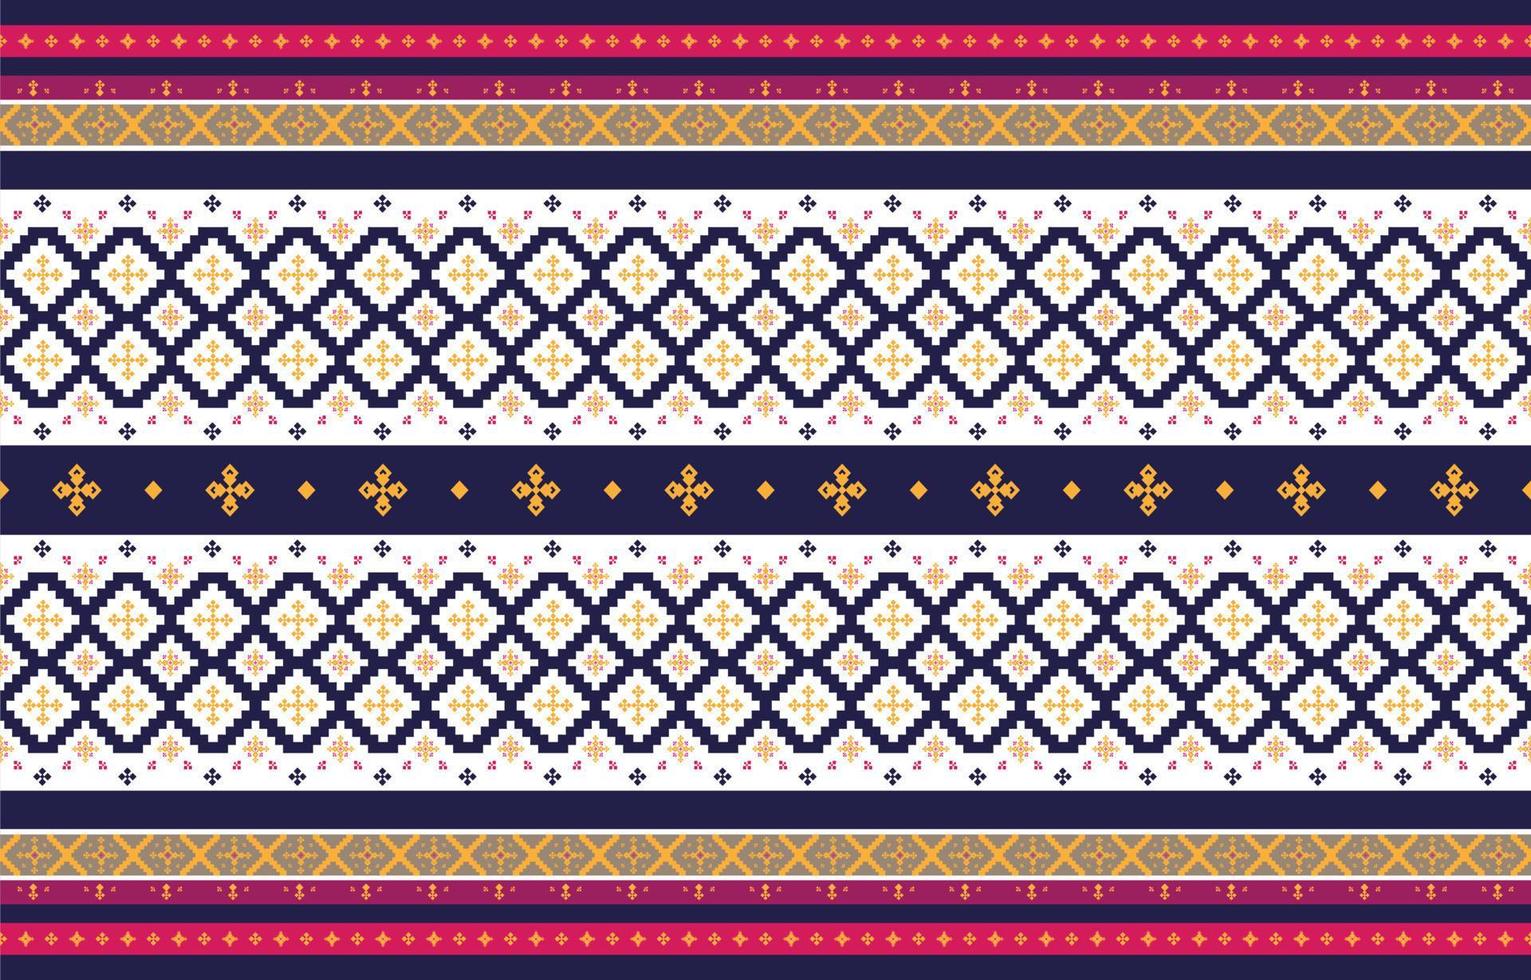 abstracte geometrische en tribale patronen, gebruiksontwerp lokale stofpatronen, ontwerp geïnspireerd door inheemse stammen. geometrische vectorillustratie vector